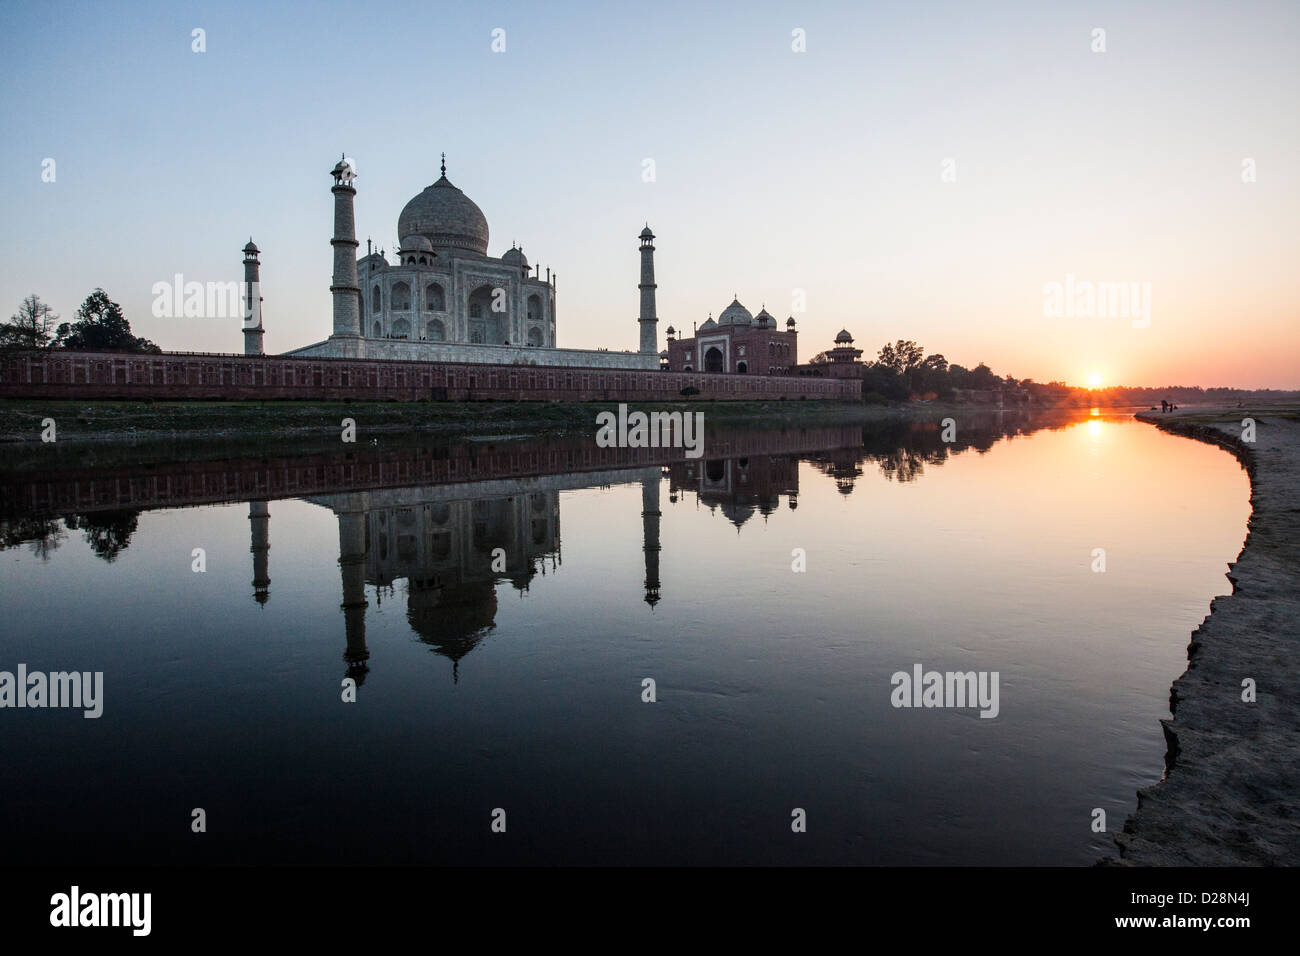 Taj Mahal, Agra, Inde Banque D'Images